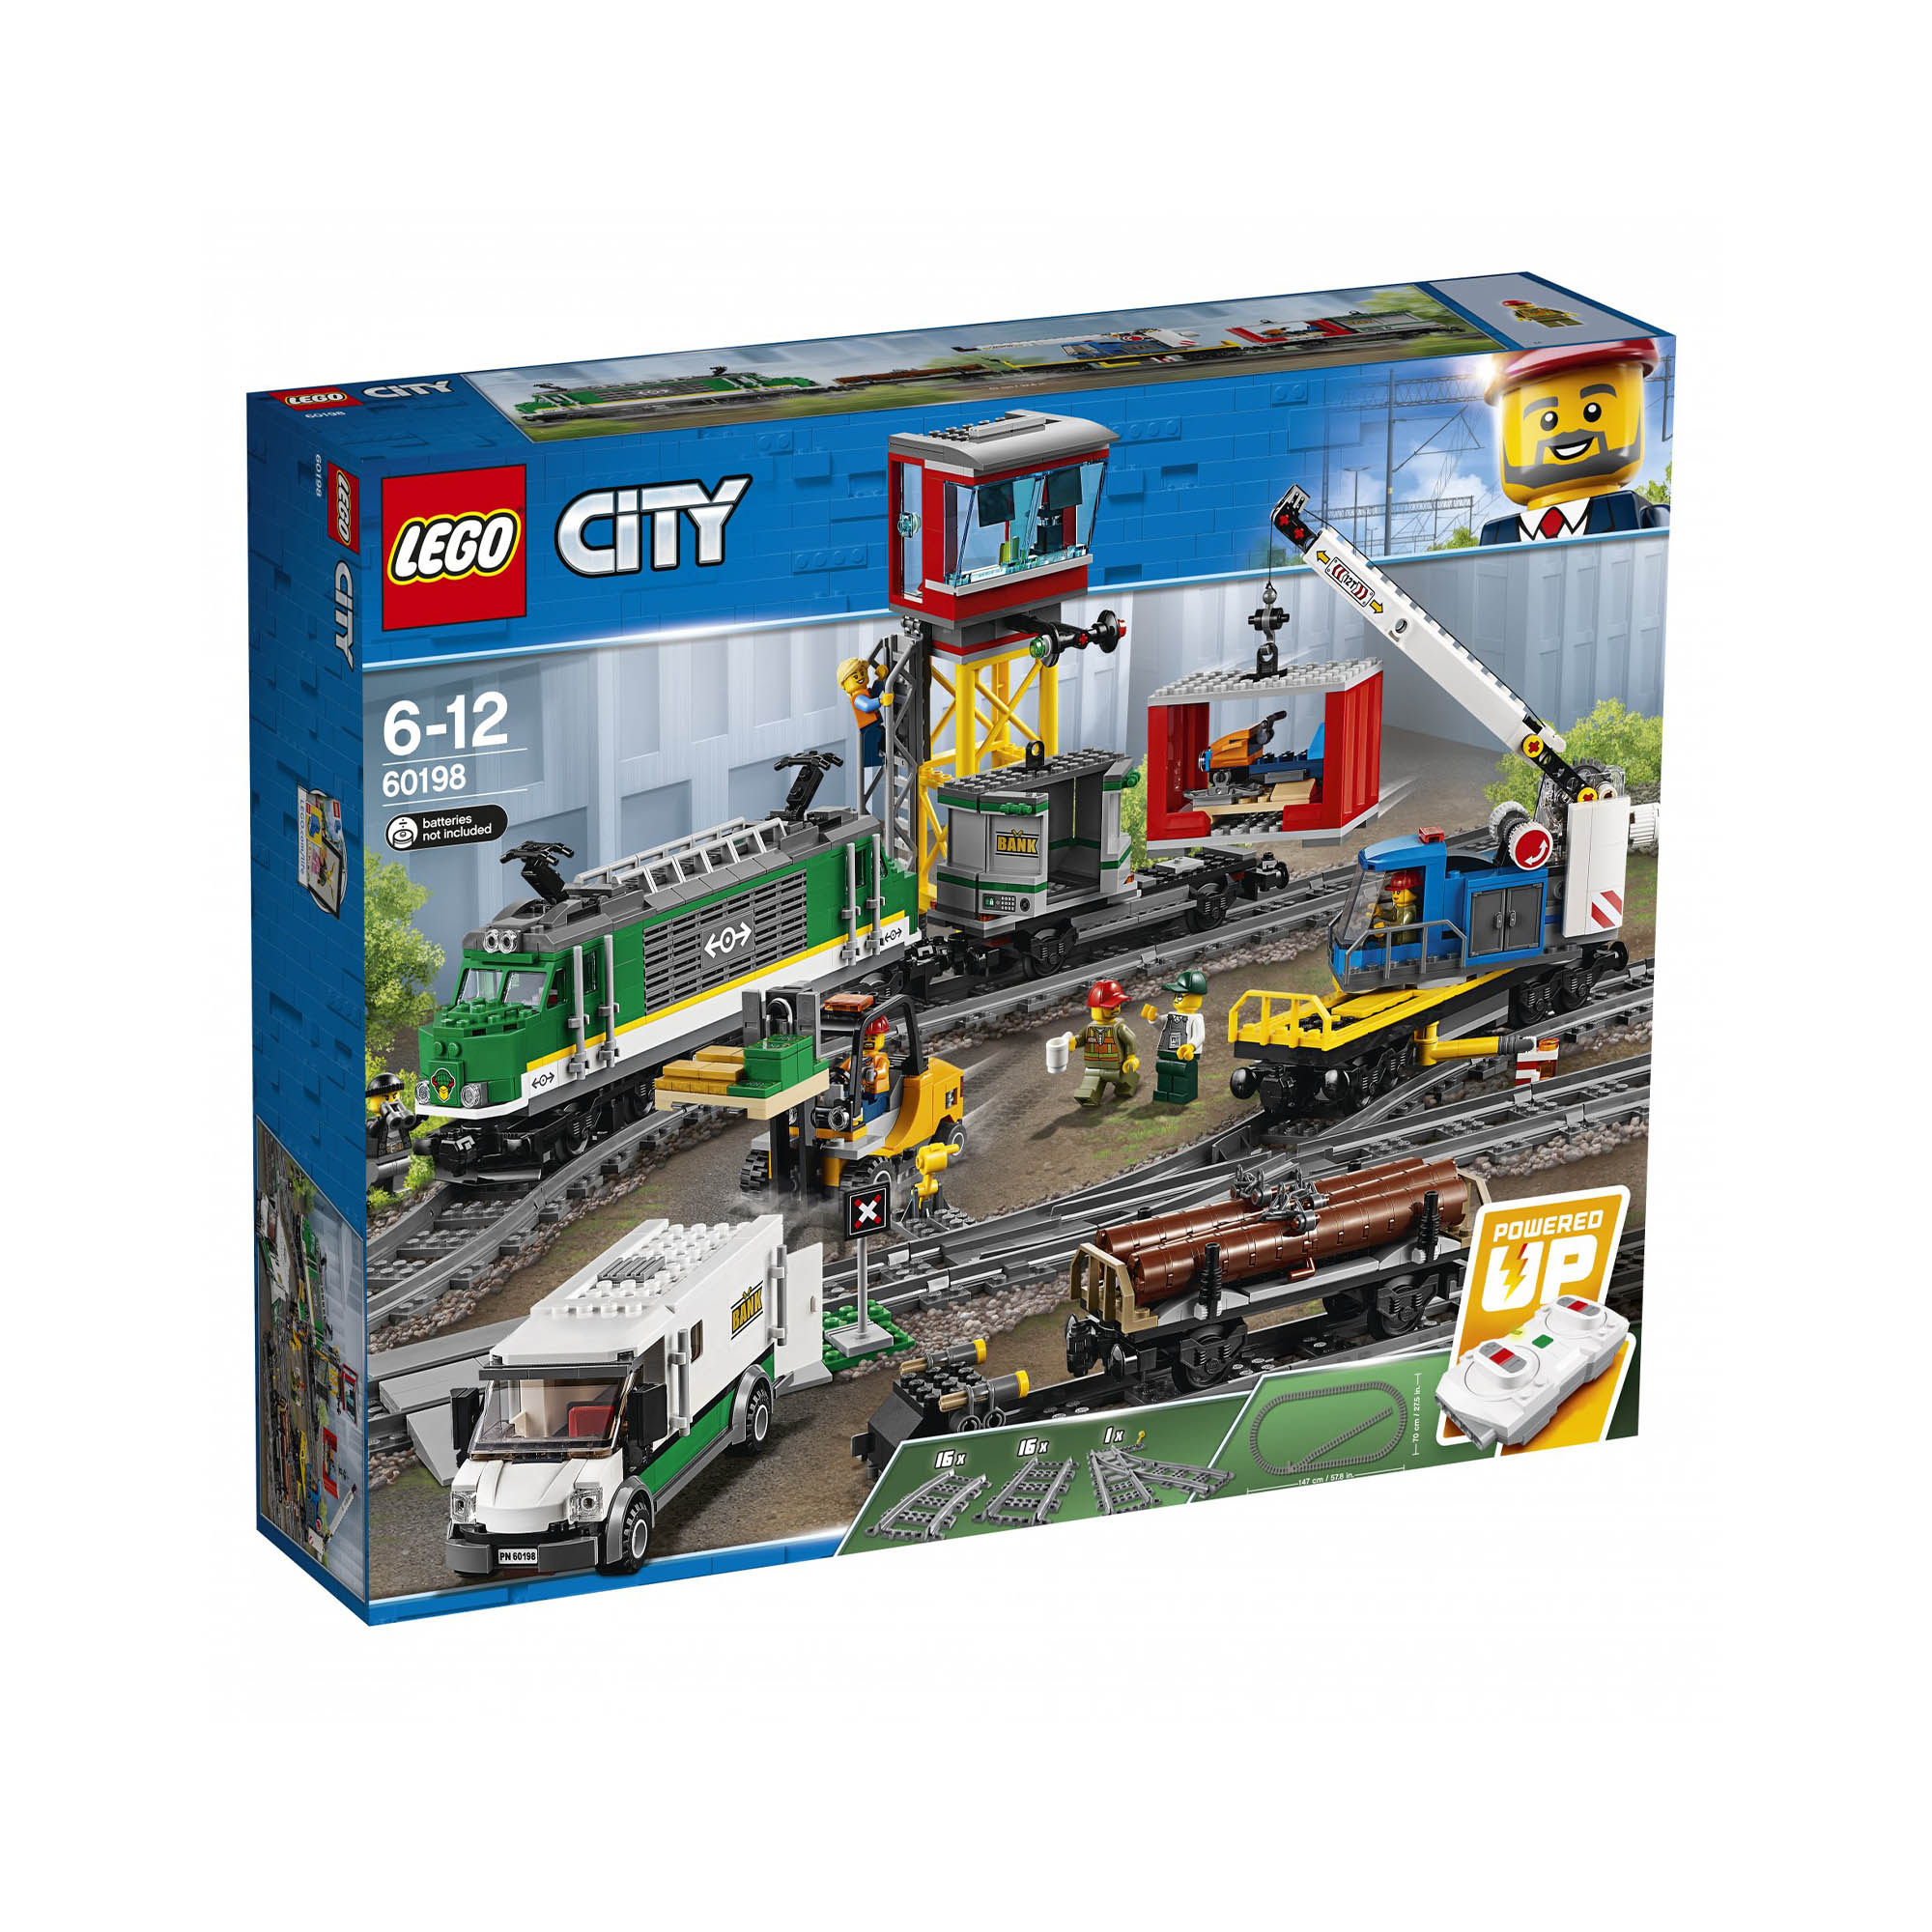 LEGO City Trains Treno Merci, Motore Alimentato a Batteria, per Bambini dai 6 An 60198, , large